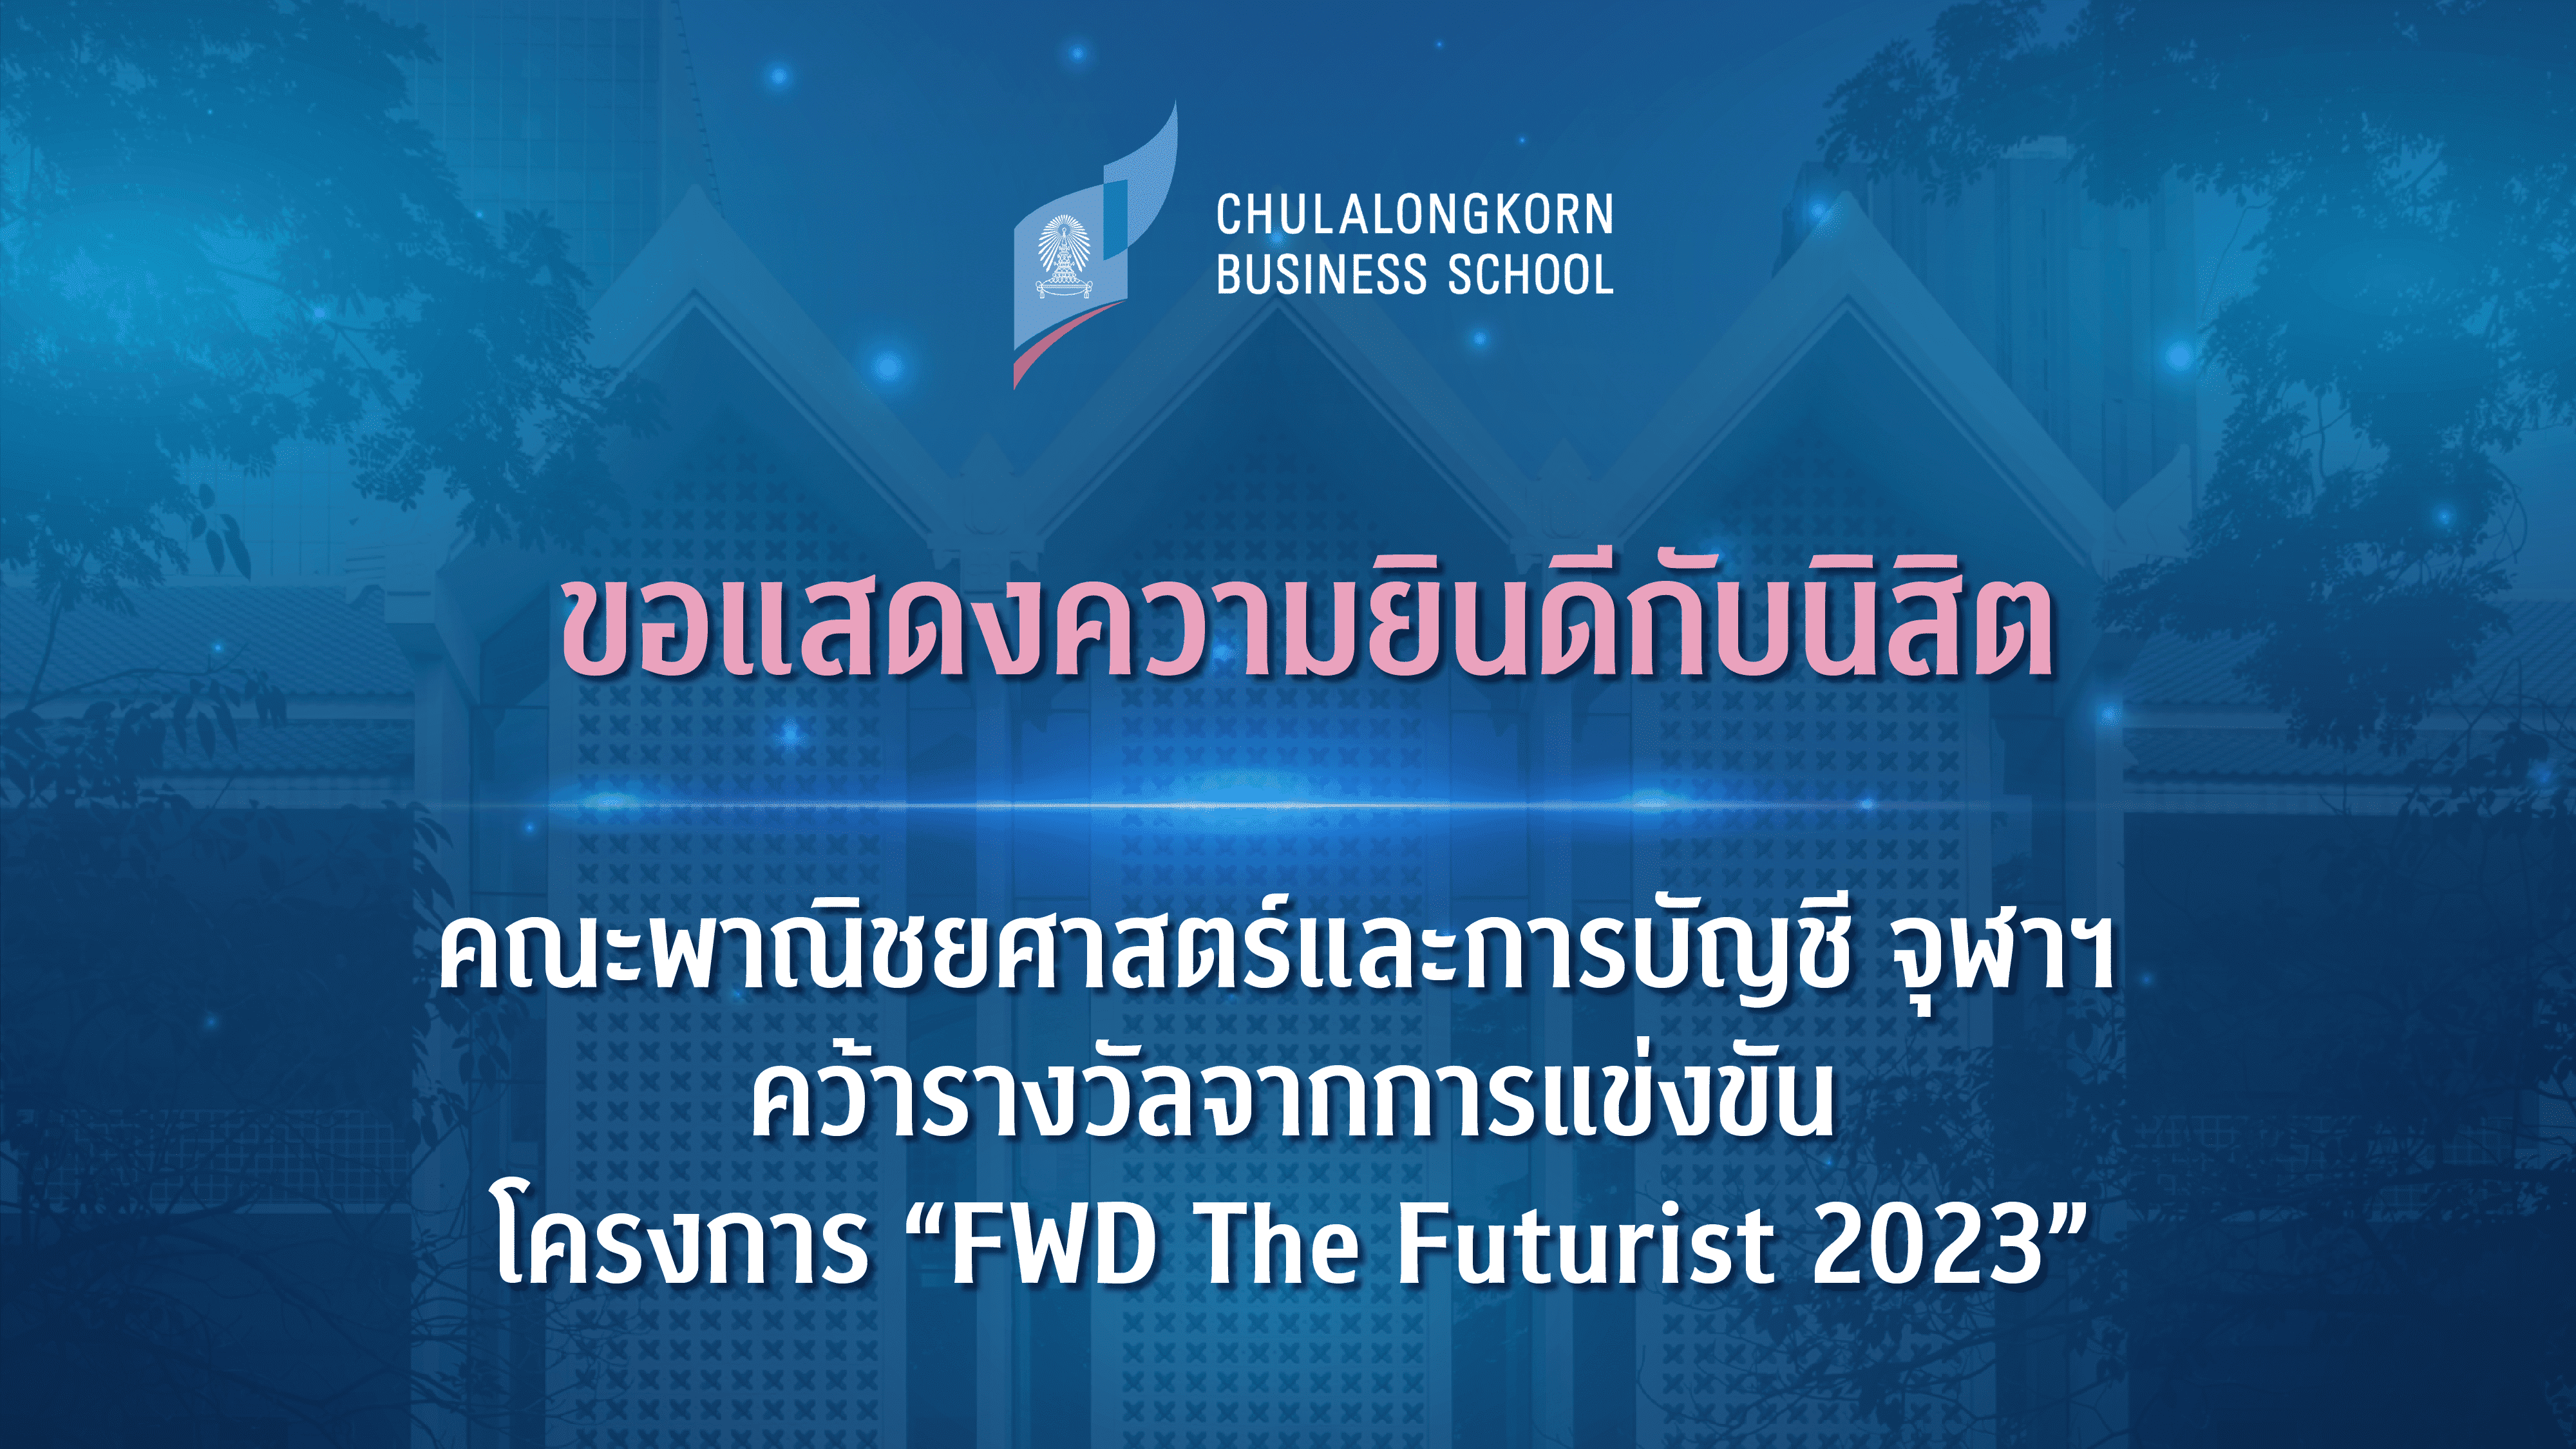 นิสิตคณะพาณิชยศาสตร์และการบัญชี จุฬาฯ คว้ารางวัลจากการแข่งขันโครงการ “FWD The Futurist 2023”